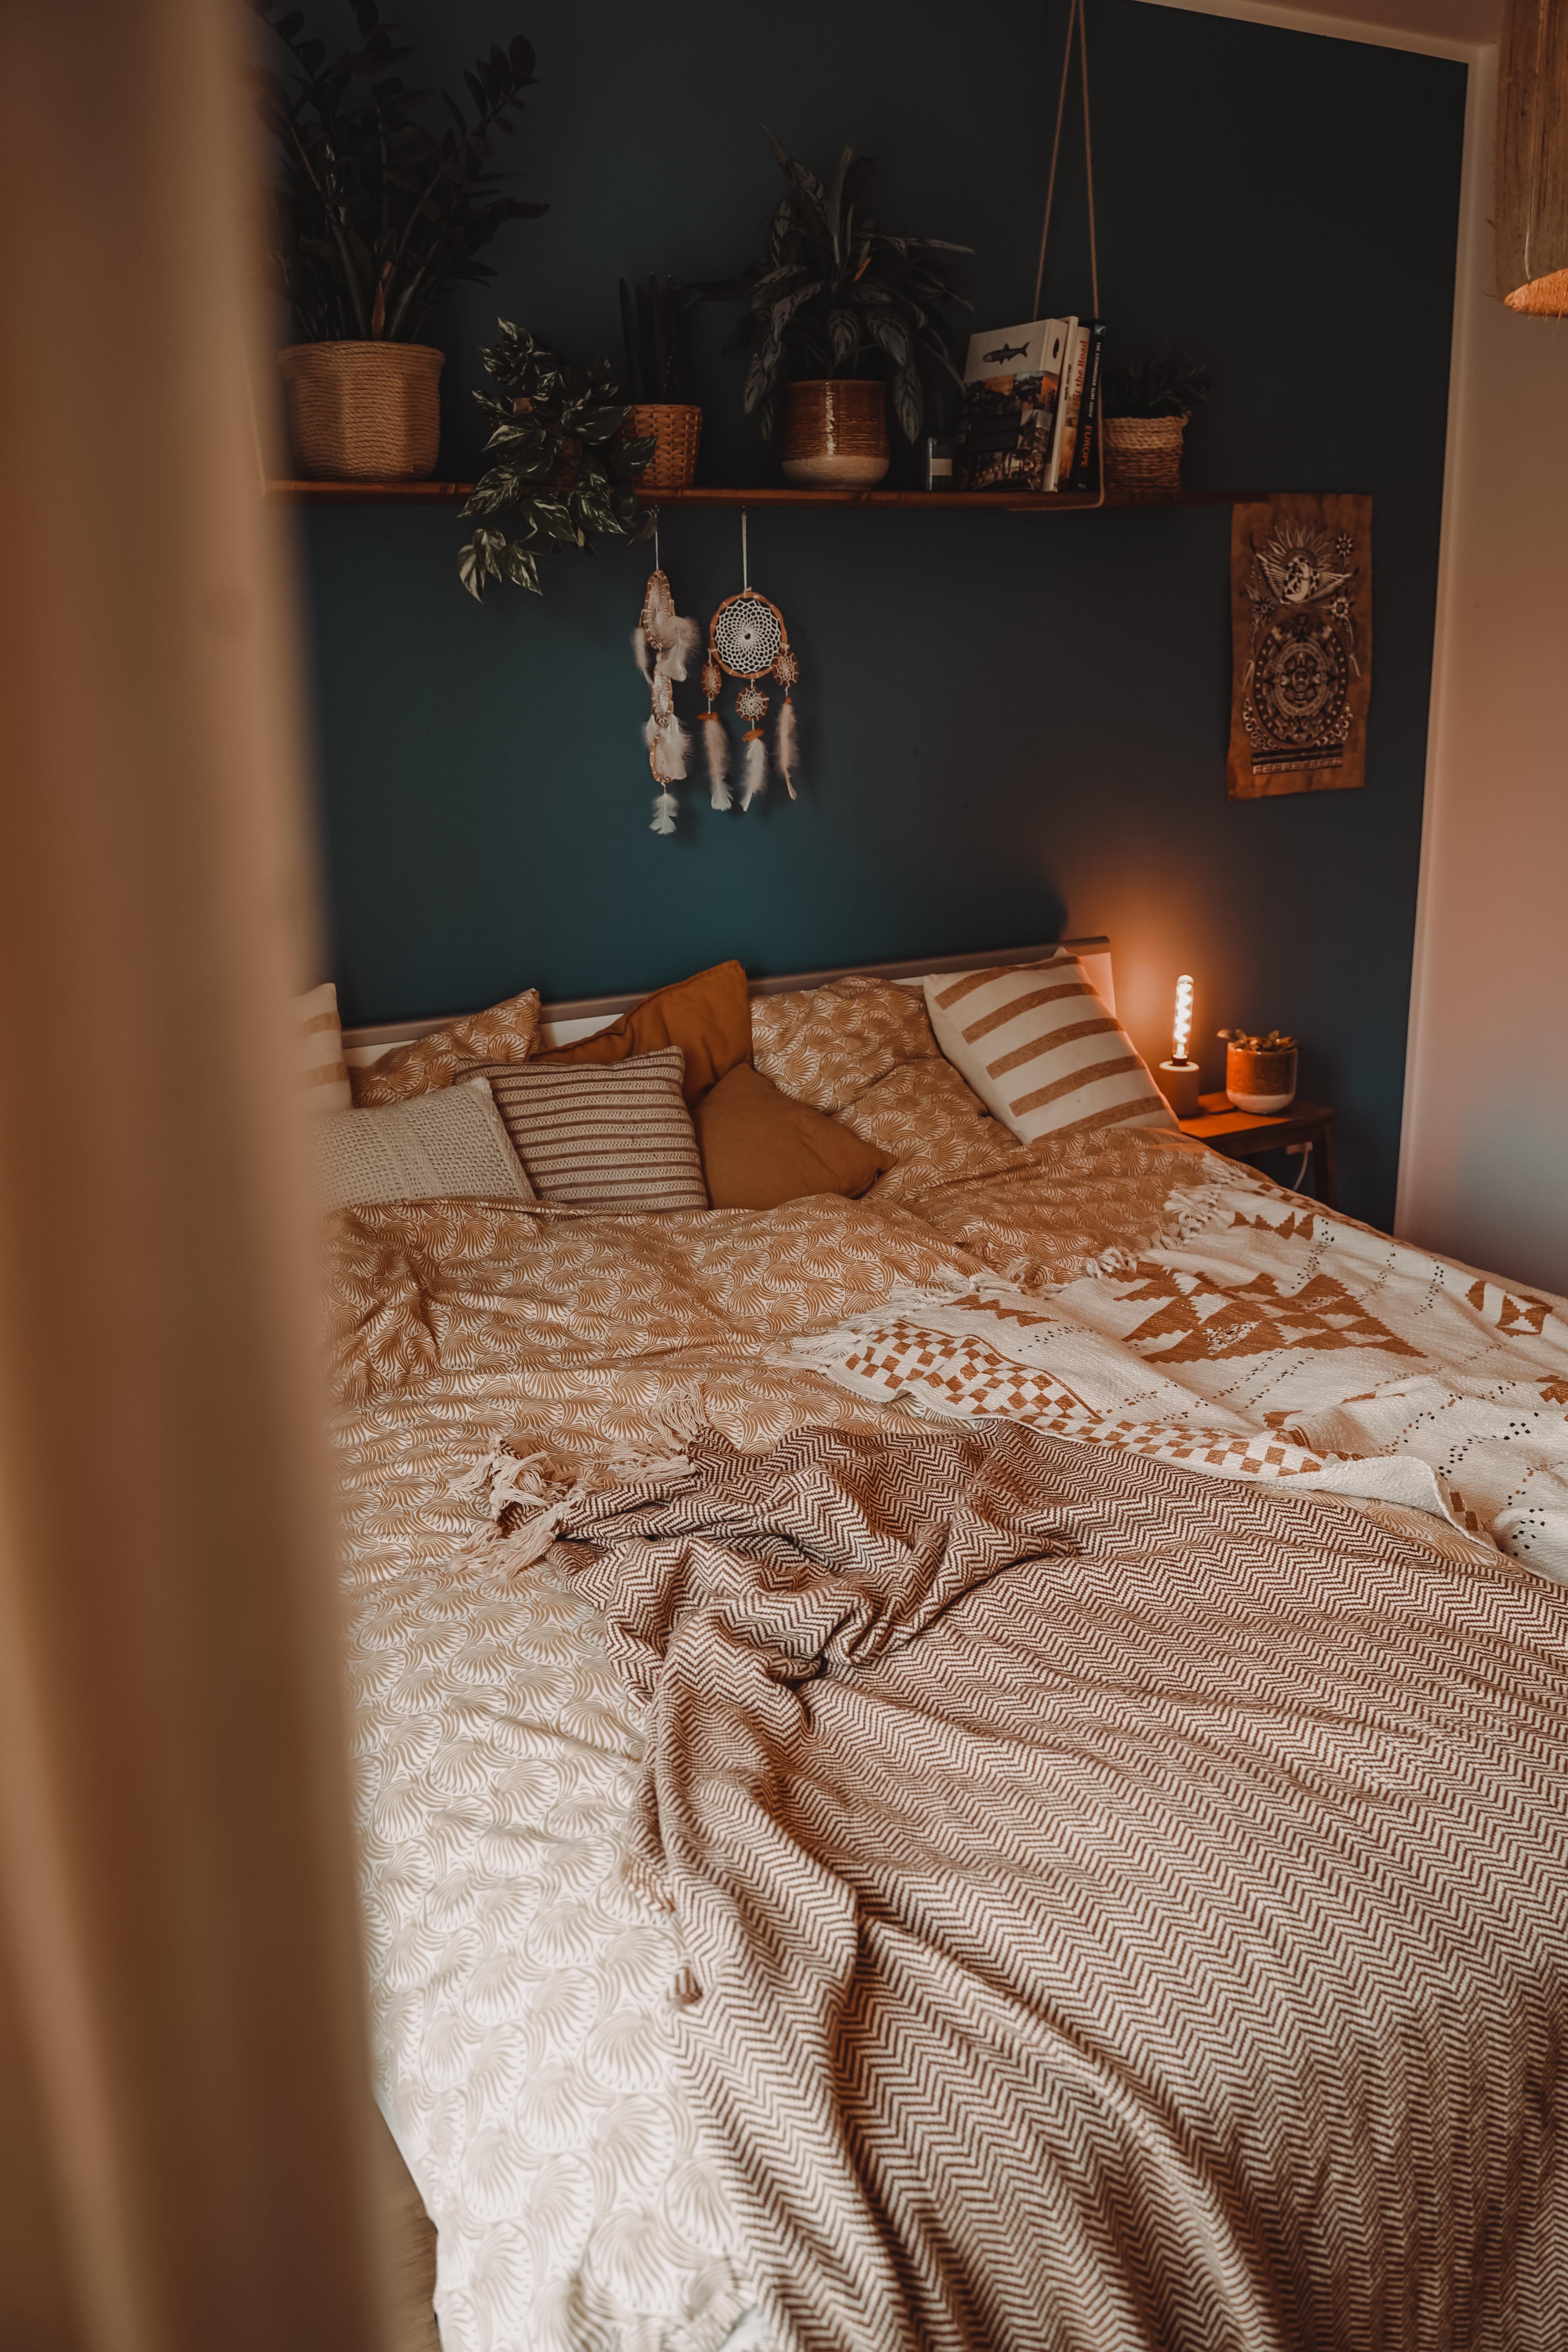 #cozy #bedroom #gemütlichkeit #hygge